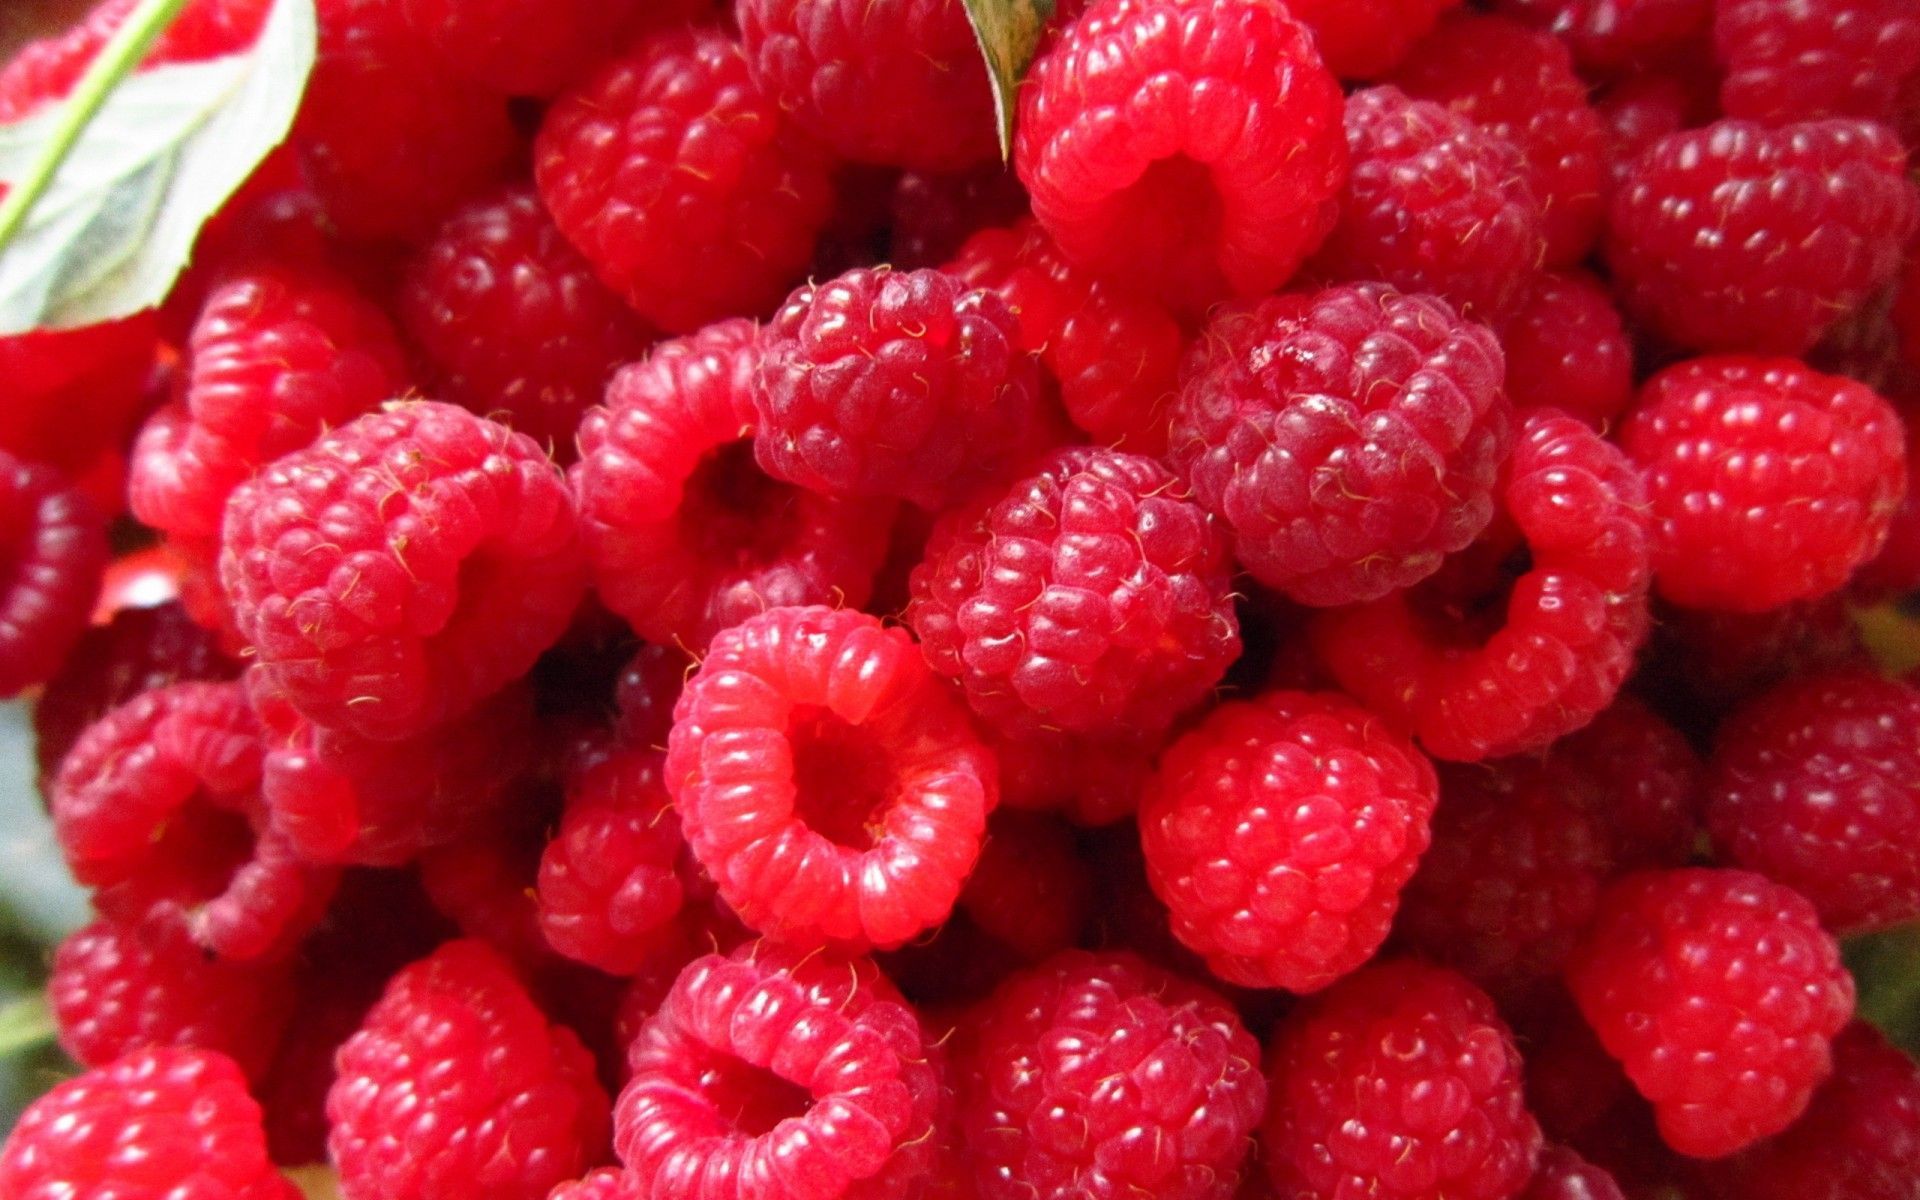 fruits_raspberries_wallpapers-1.jpg